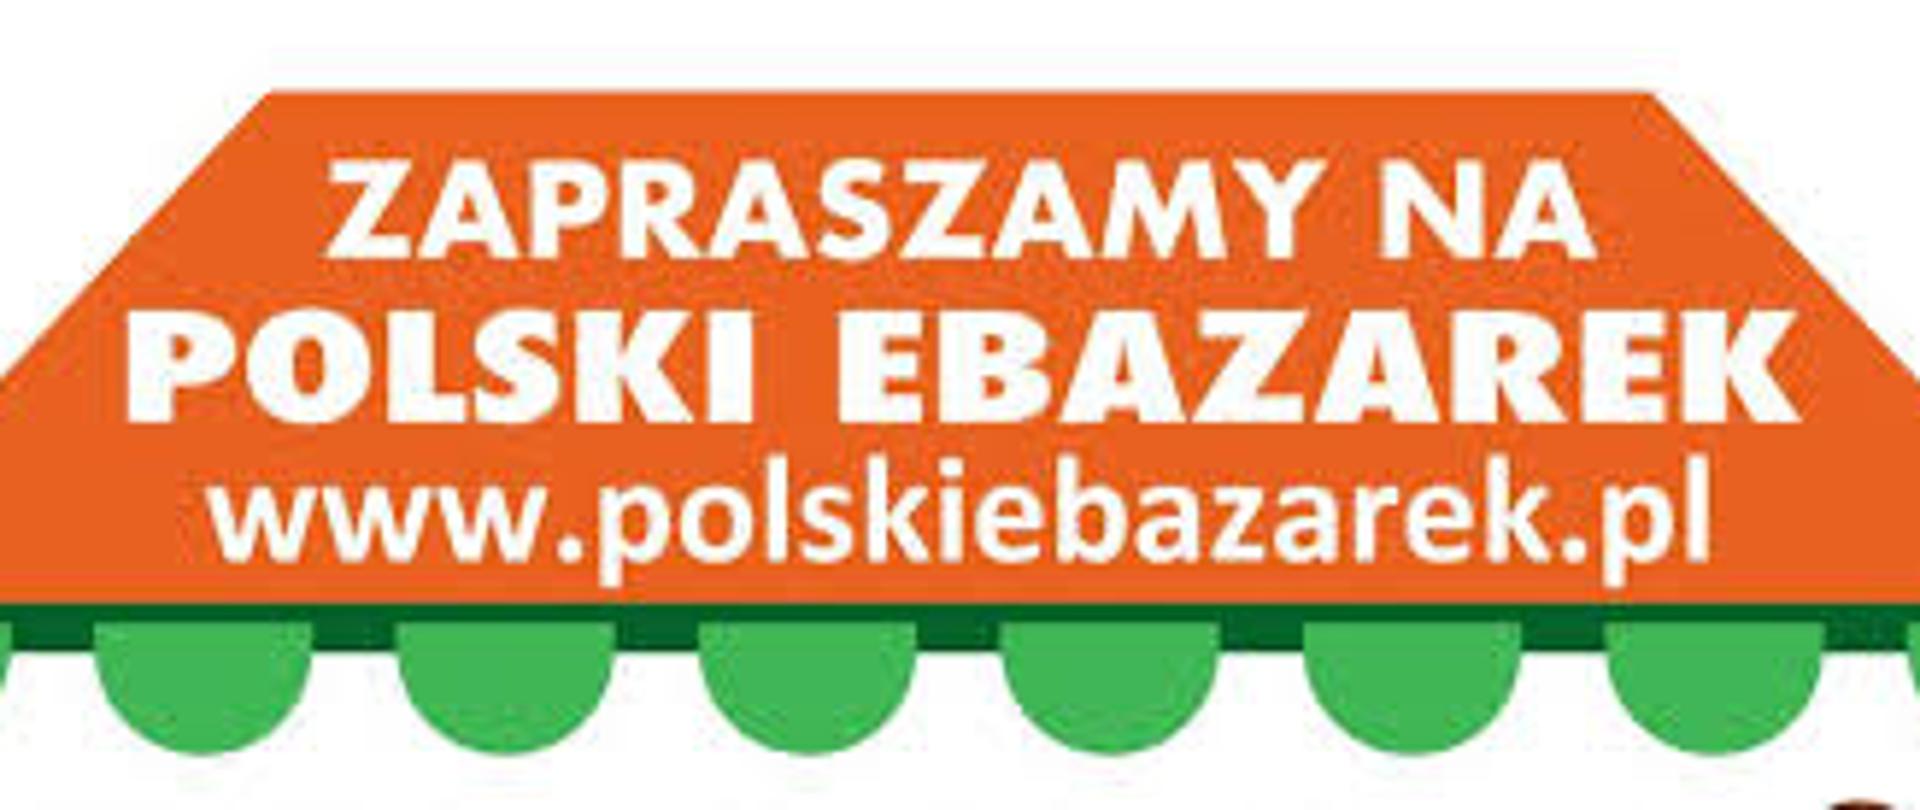 grafikę na białym tle imitującą daszek w kolorze pomarańczowym, na którym widnieje biały napis: ZAPRASZAMY NA POLSKI EBAZAEREK www.polskiebazare.pl